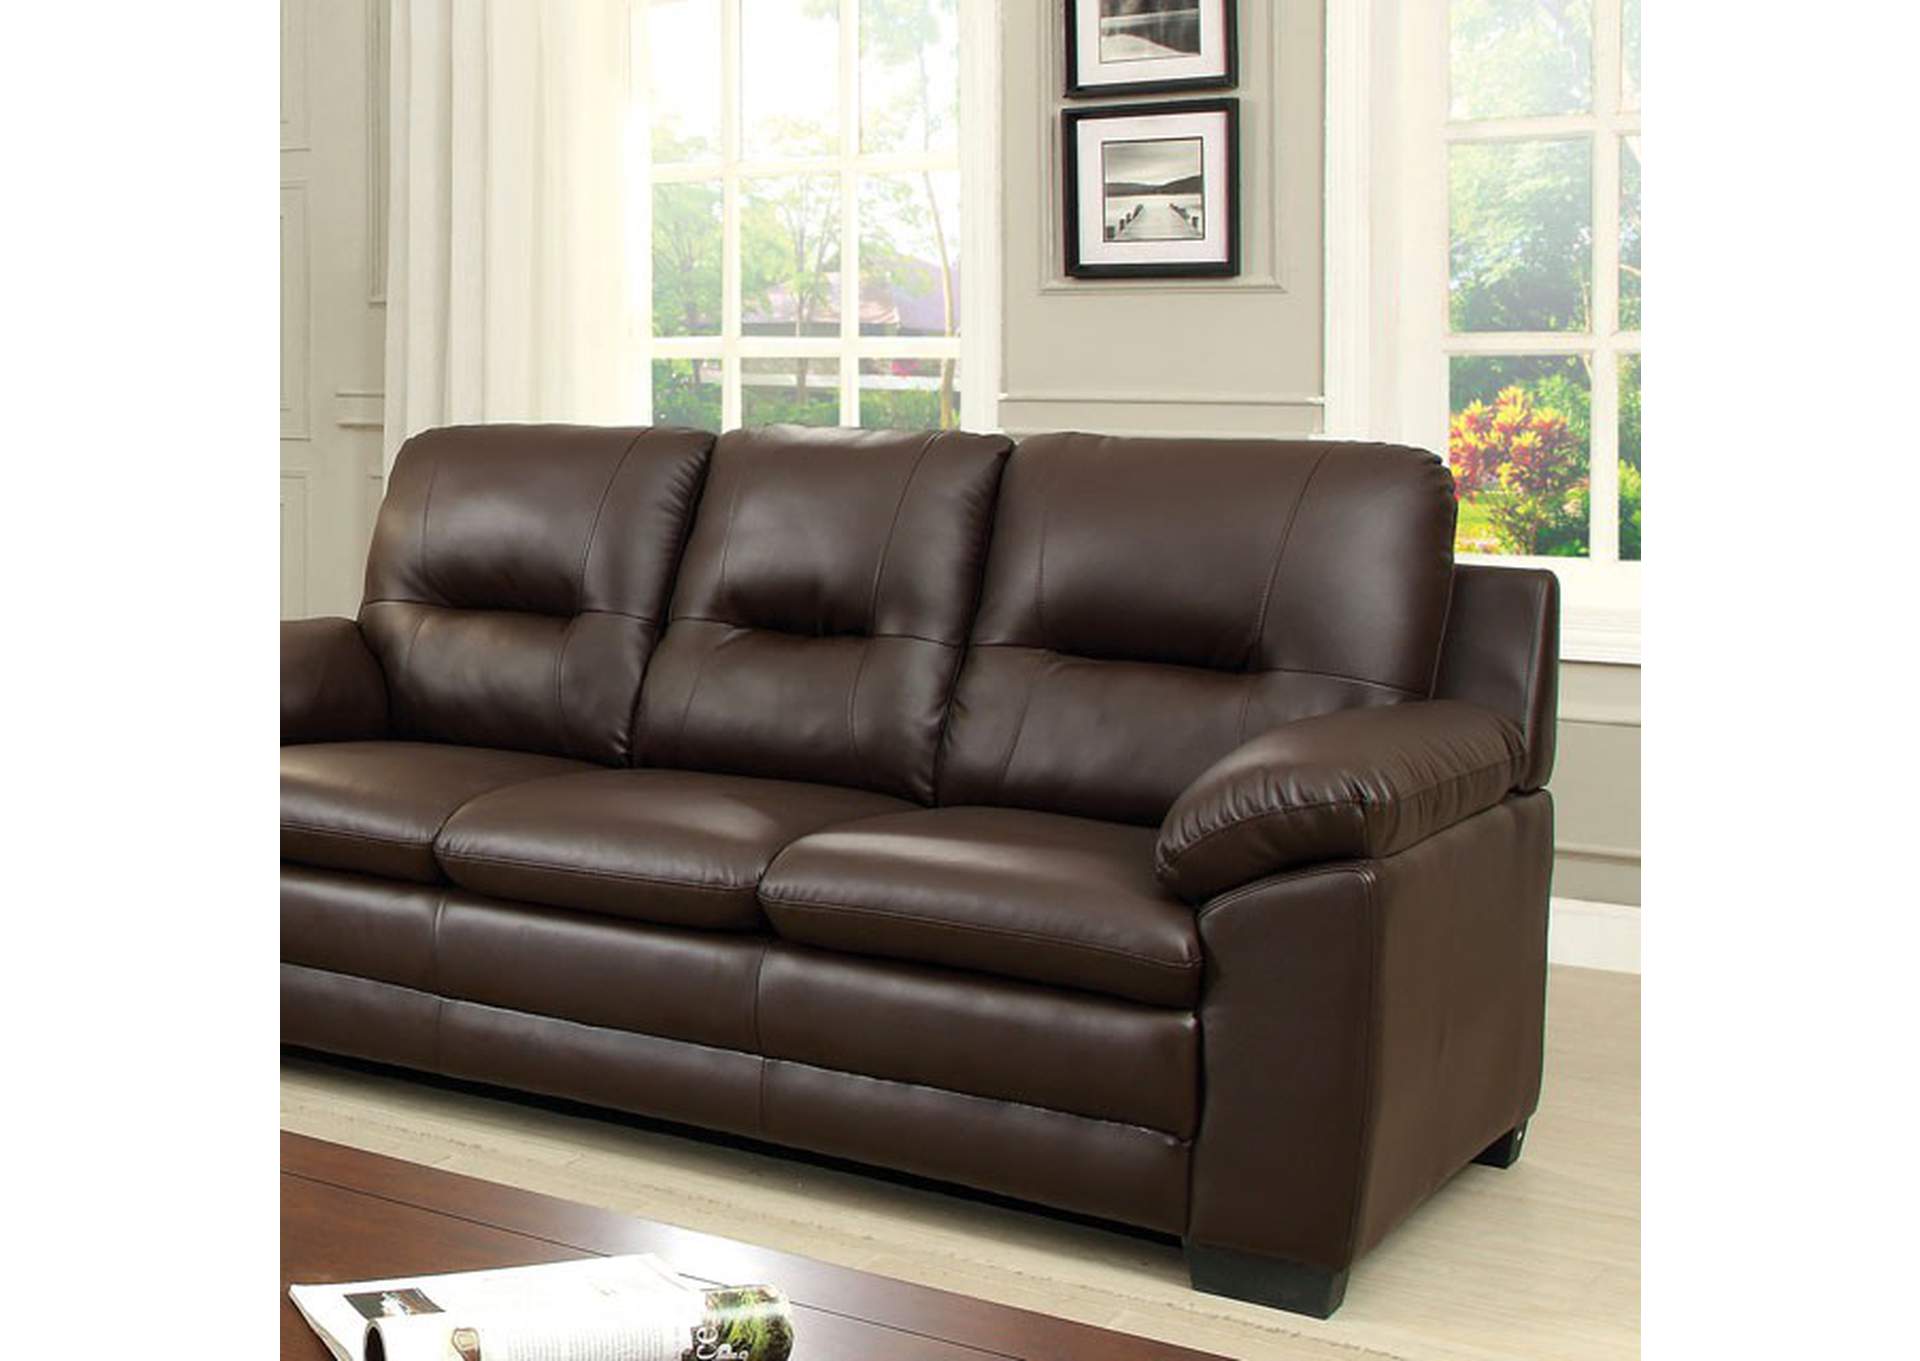 Parma Brown Sofa,Furniture of America